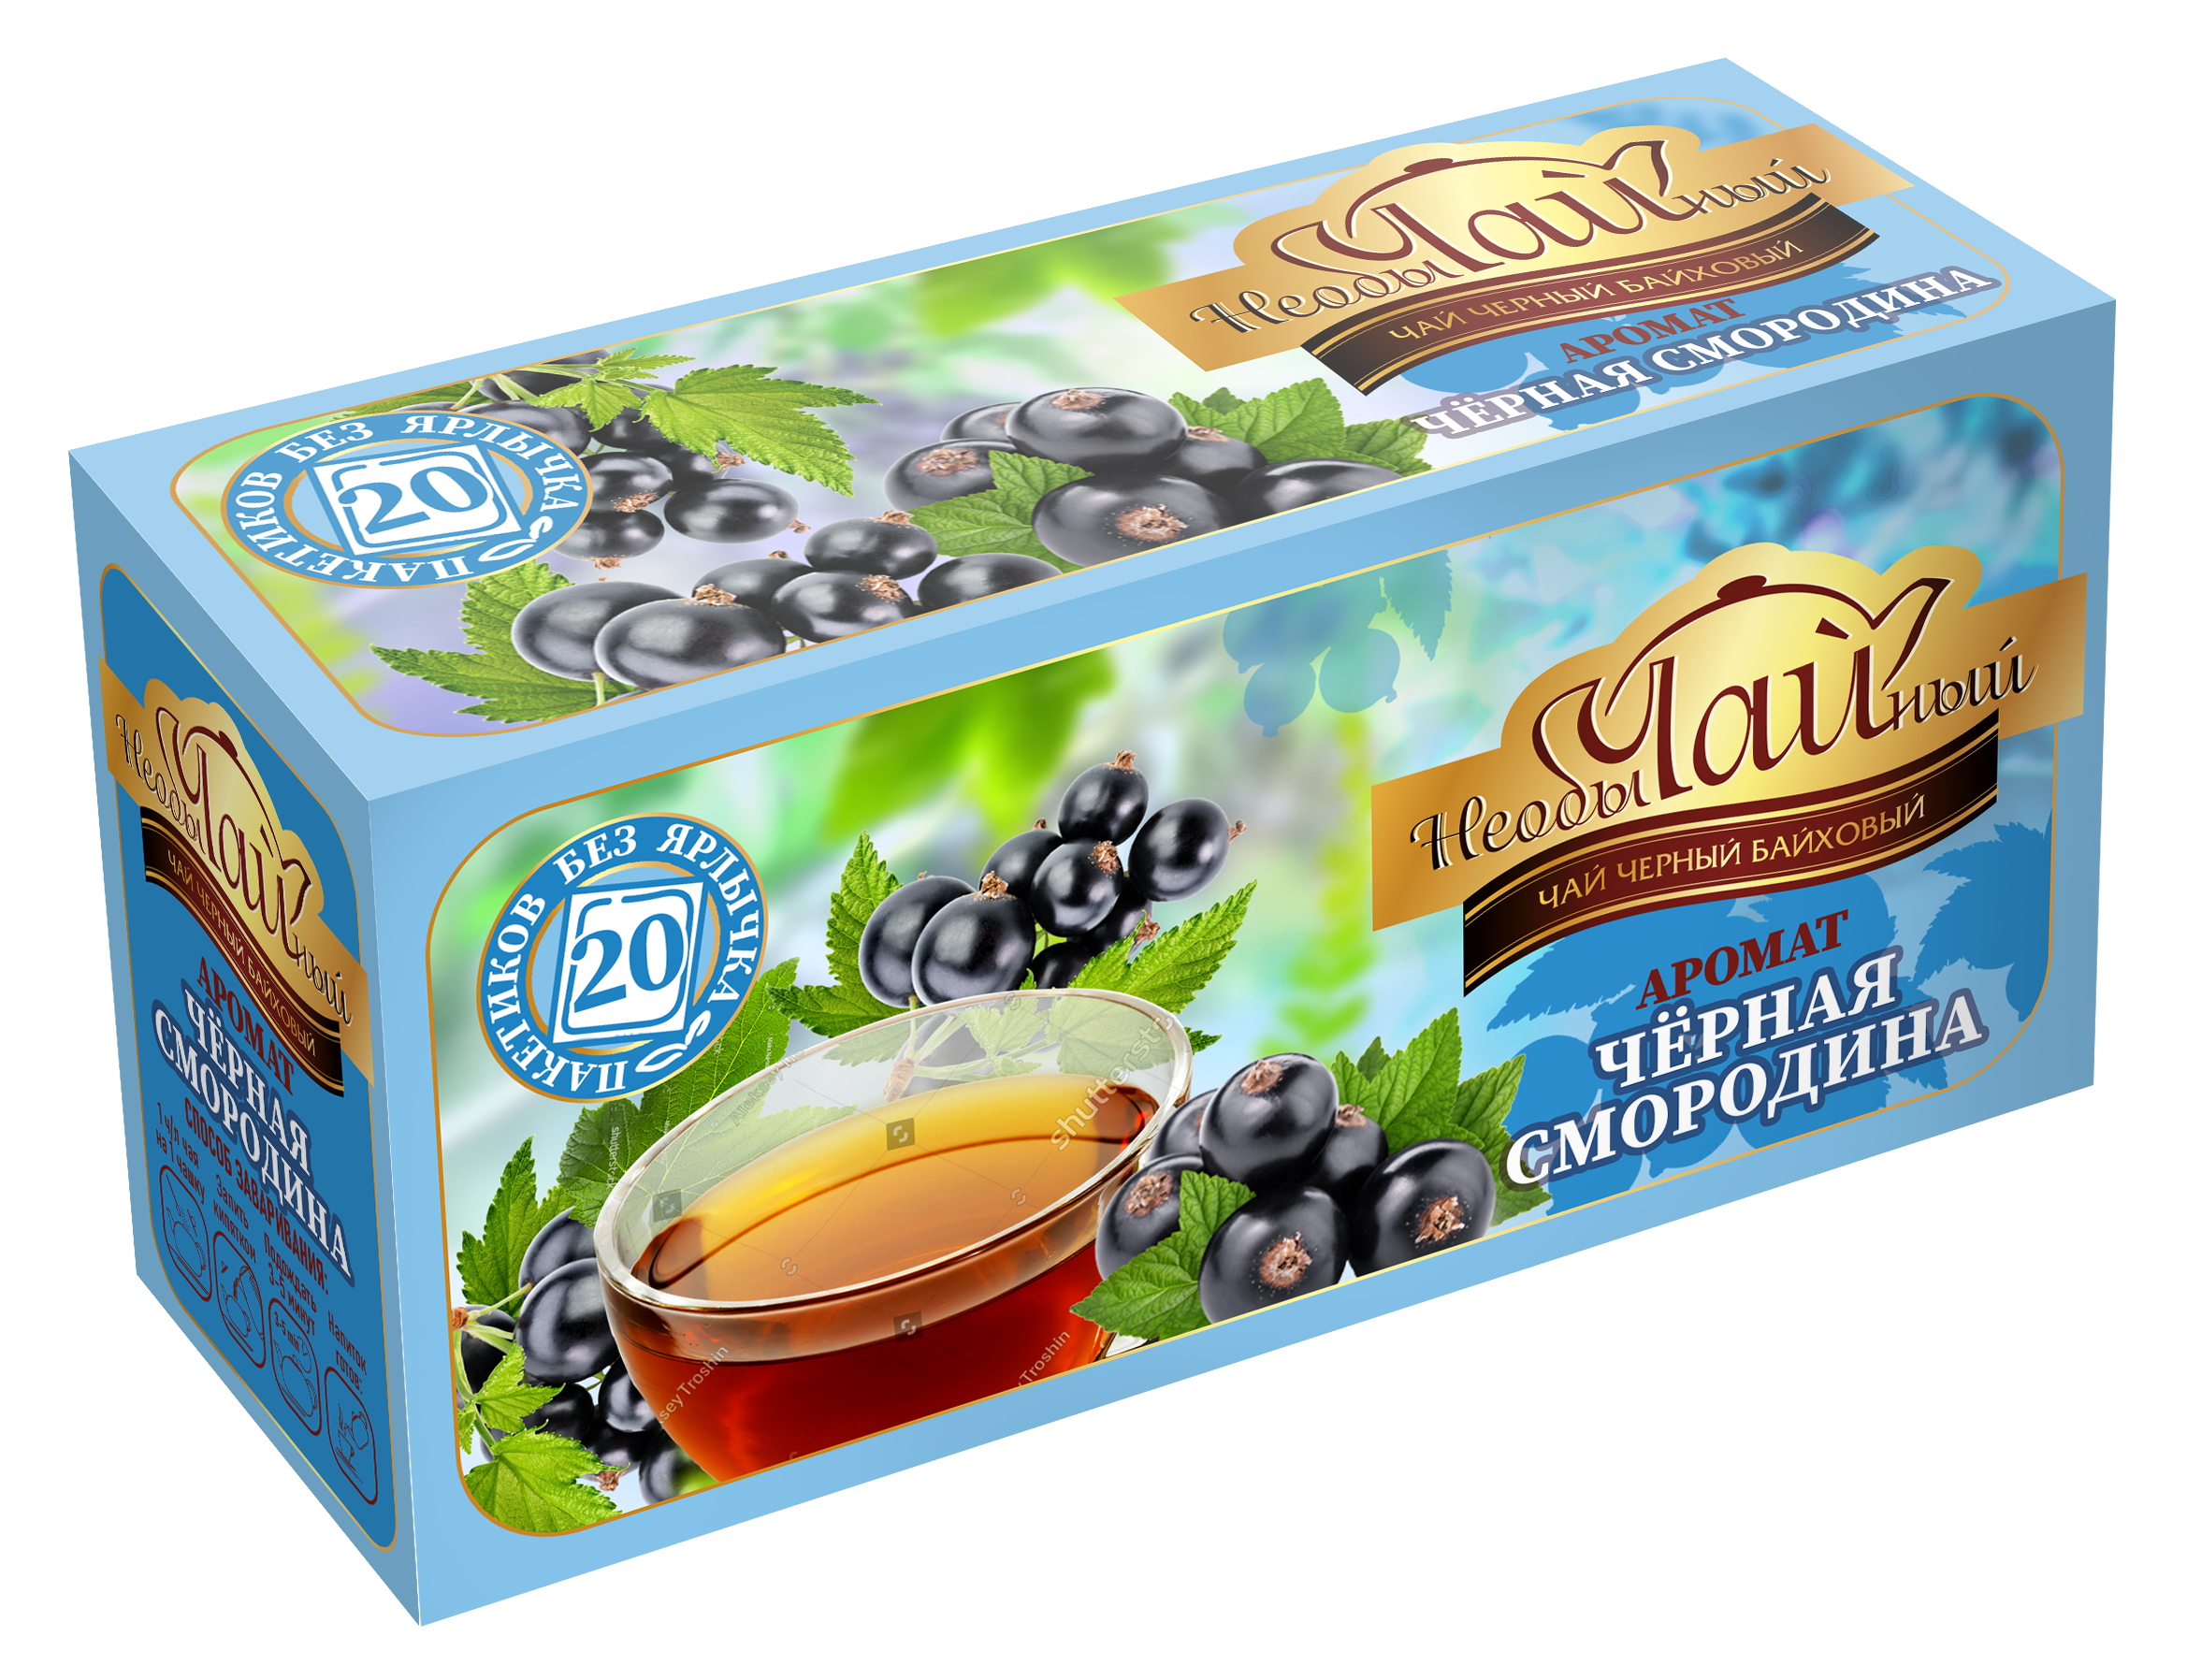 Черная Смородина | Черный чай с ароматом черной смородины 20 пак